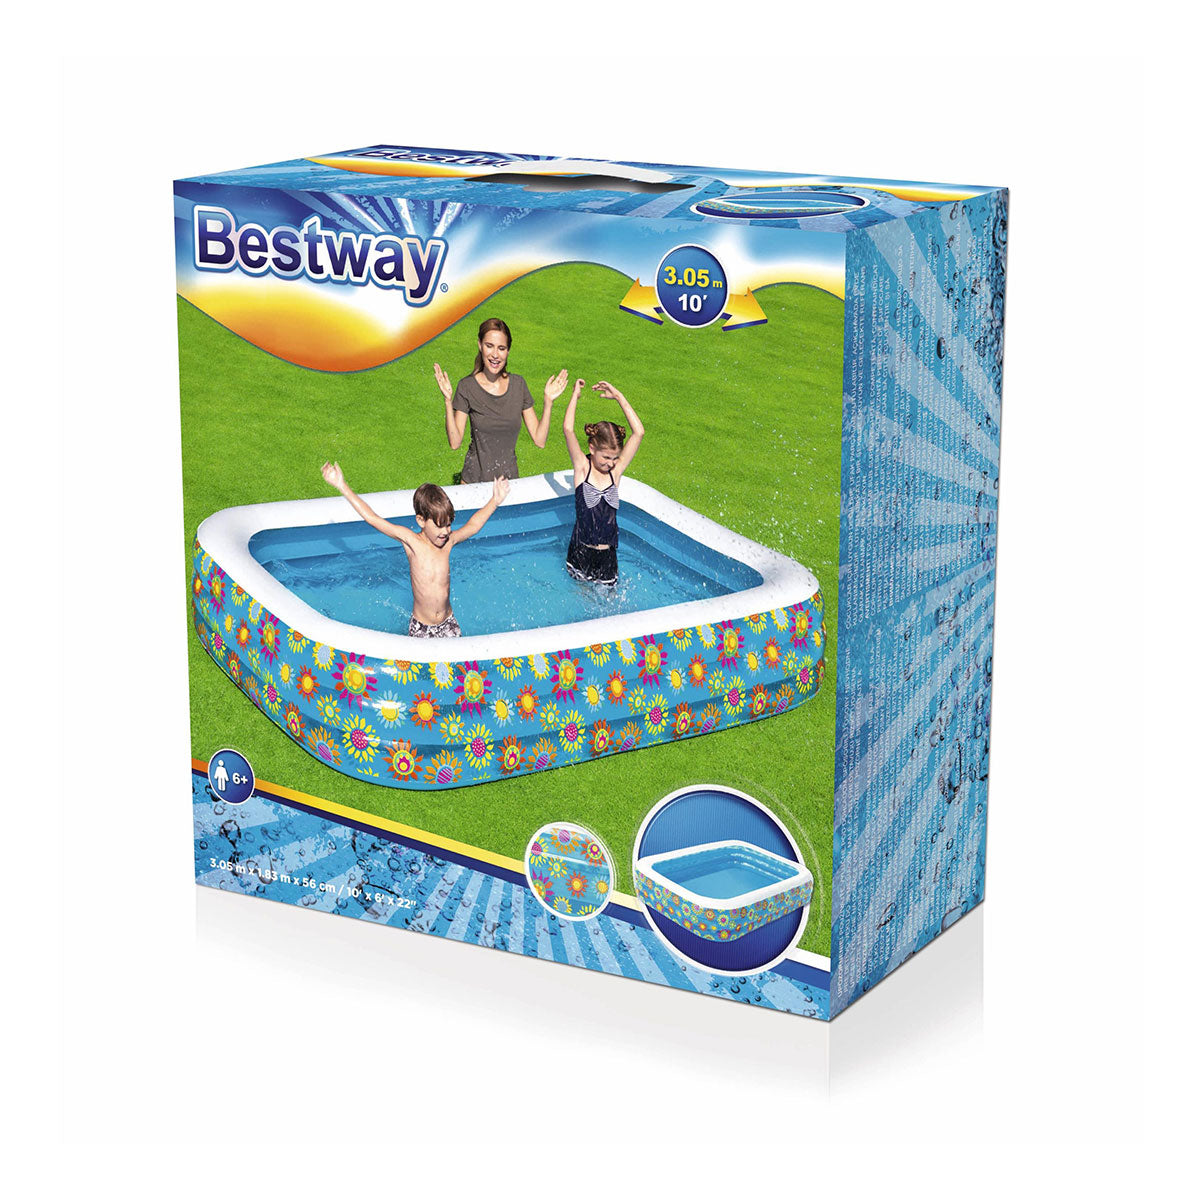 Bestway - Sea Life Play Pool 54121